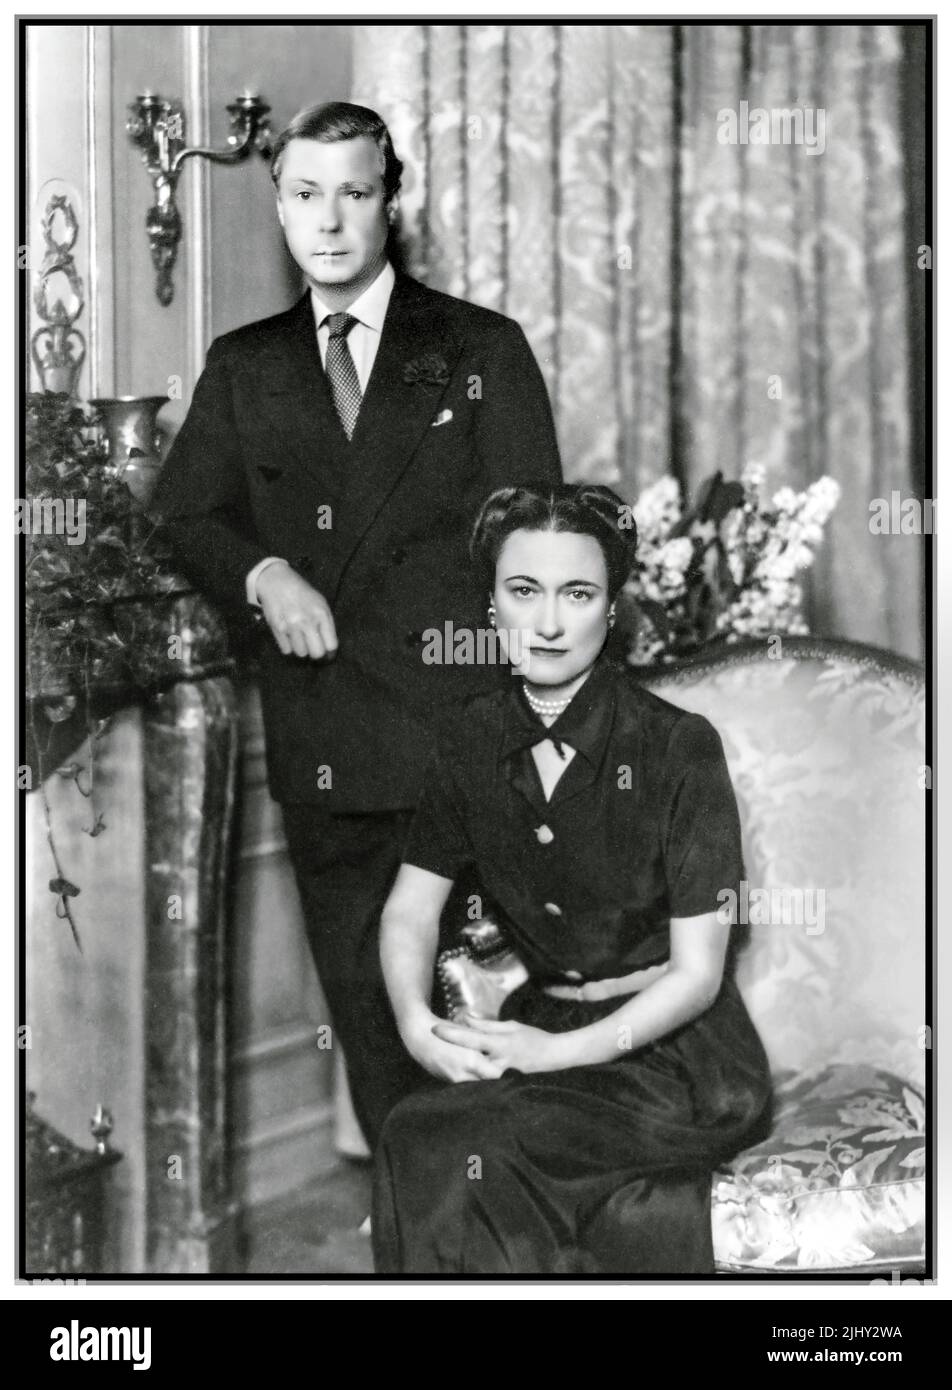 Der Herzog und die Herzogin von Windsor 1930s formelles Porträt Datum c1934 Fotograf Vincenzo Laviosa (Italienisch) die Zukunft Edward VIII und Wallis Simpson im Jahr 1934. Sie wurden im Juni 1937 verheiratet. Stockfoto